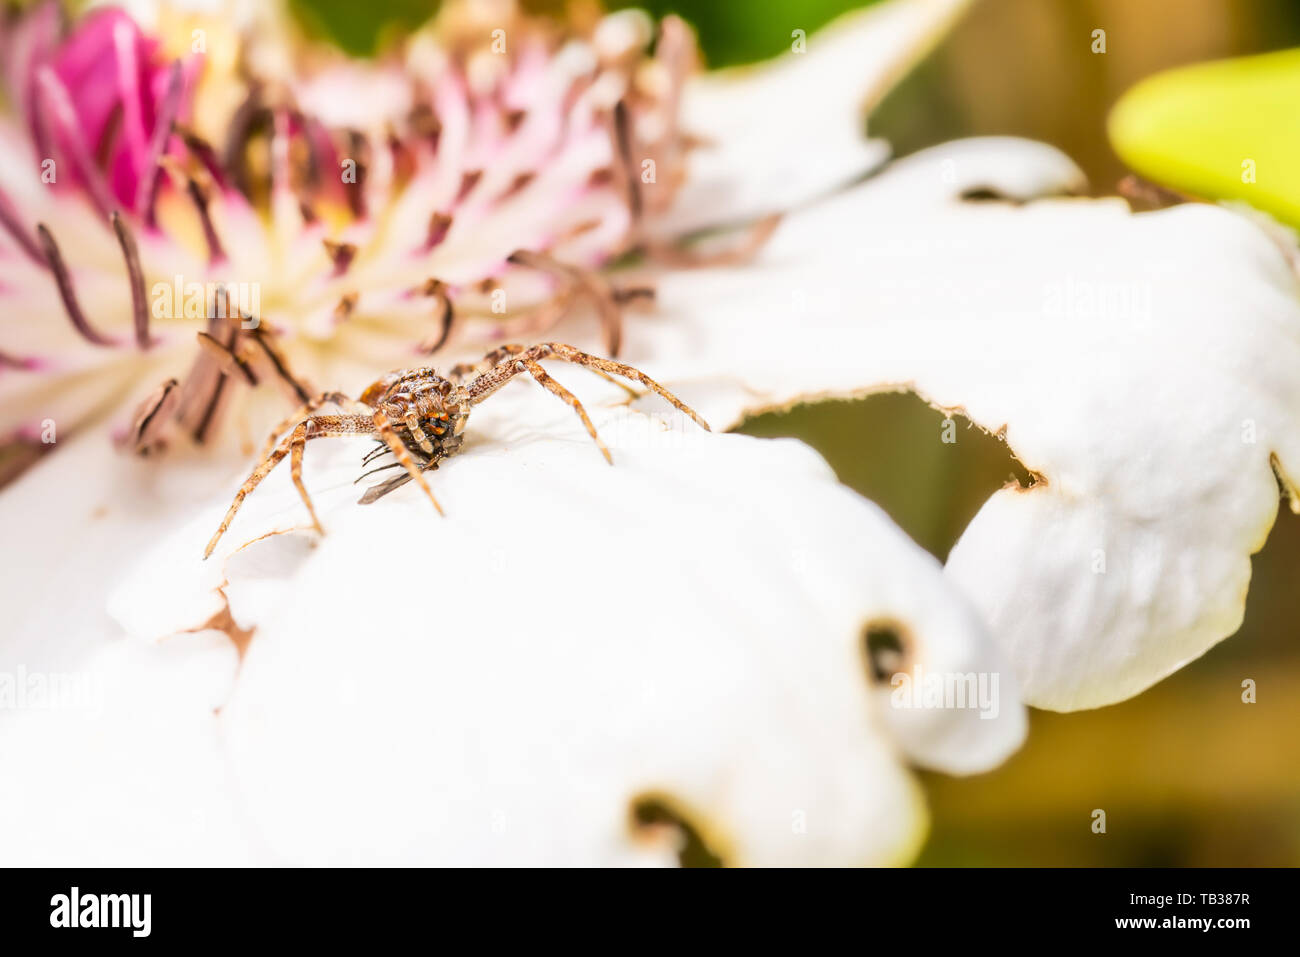 Horizontale Foto von Nizza braune Spinne. Insekt ist auf weiße Blüte mit rosa Zentrum thront. Spider verfing sich ein fliegen und es isst. Spider hat haarigen Körper und l Stockfoto